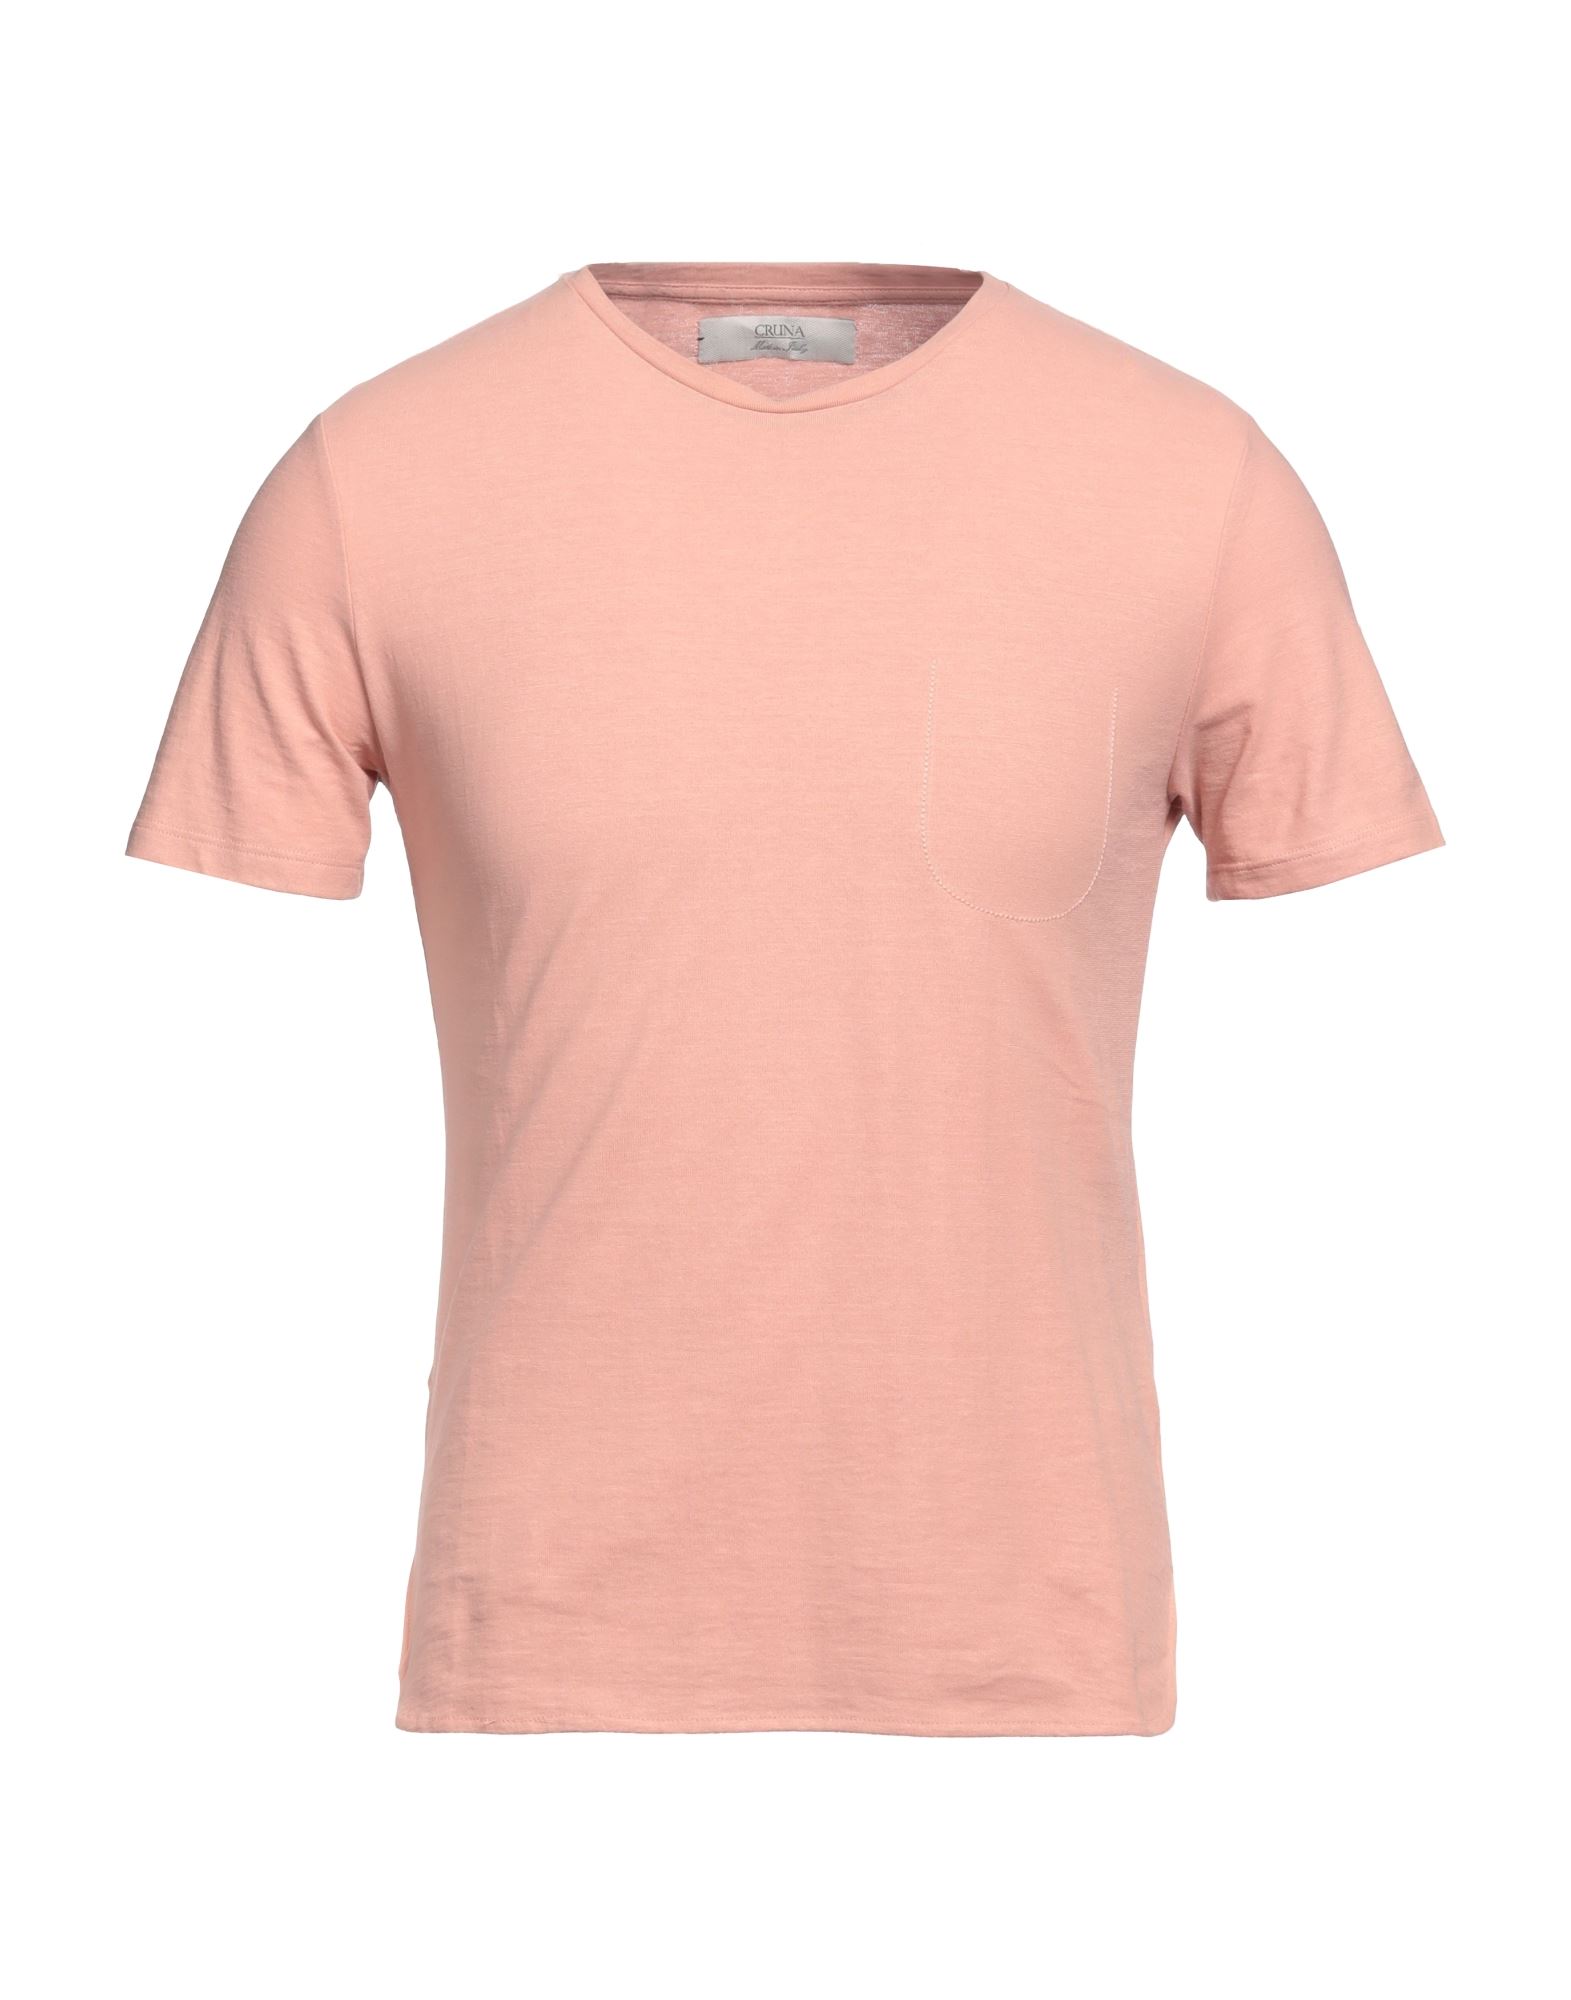 Cruna T-shirts In Pink